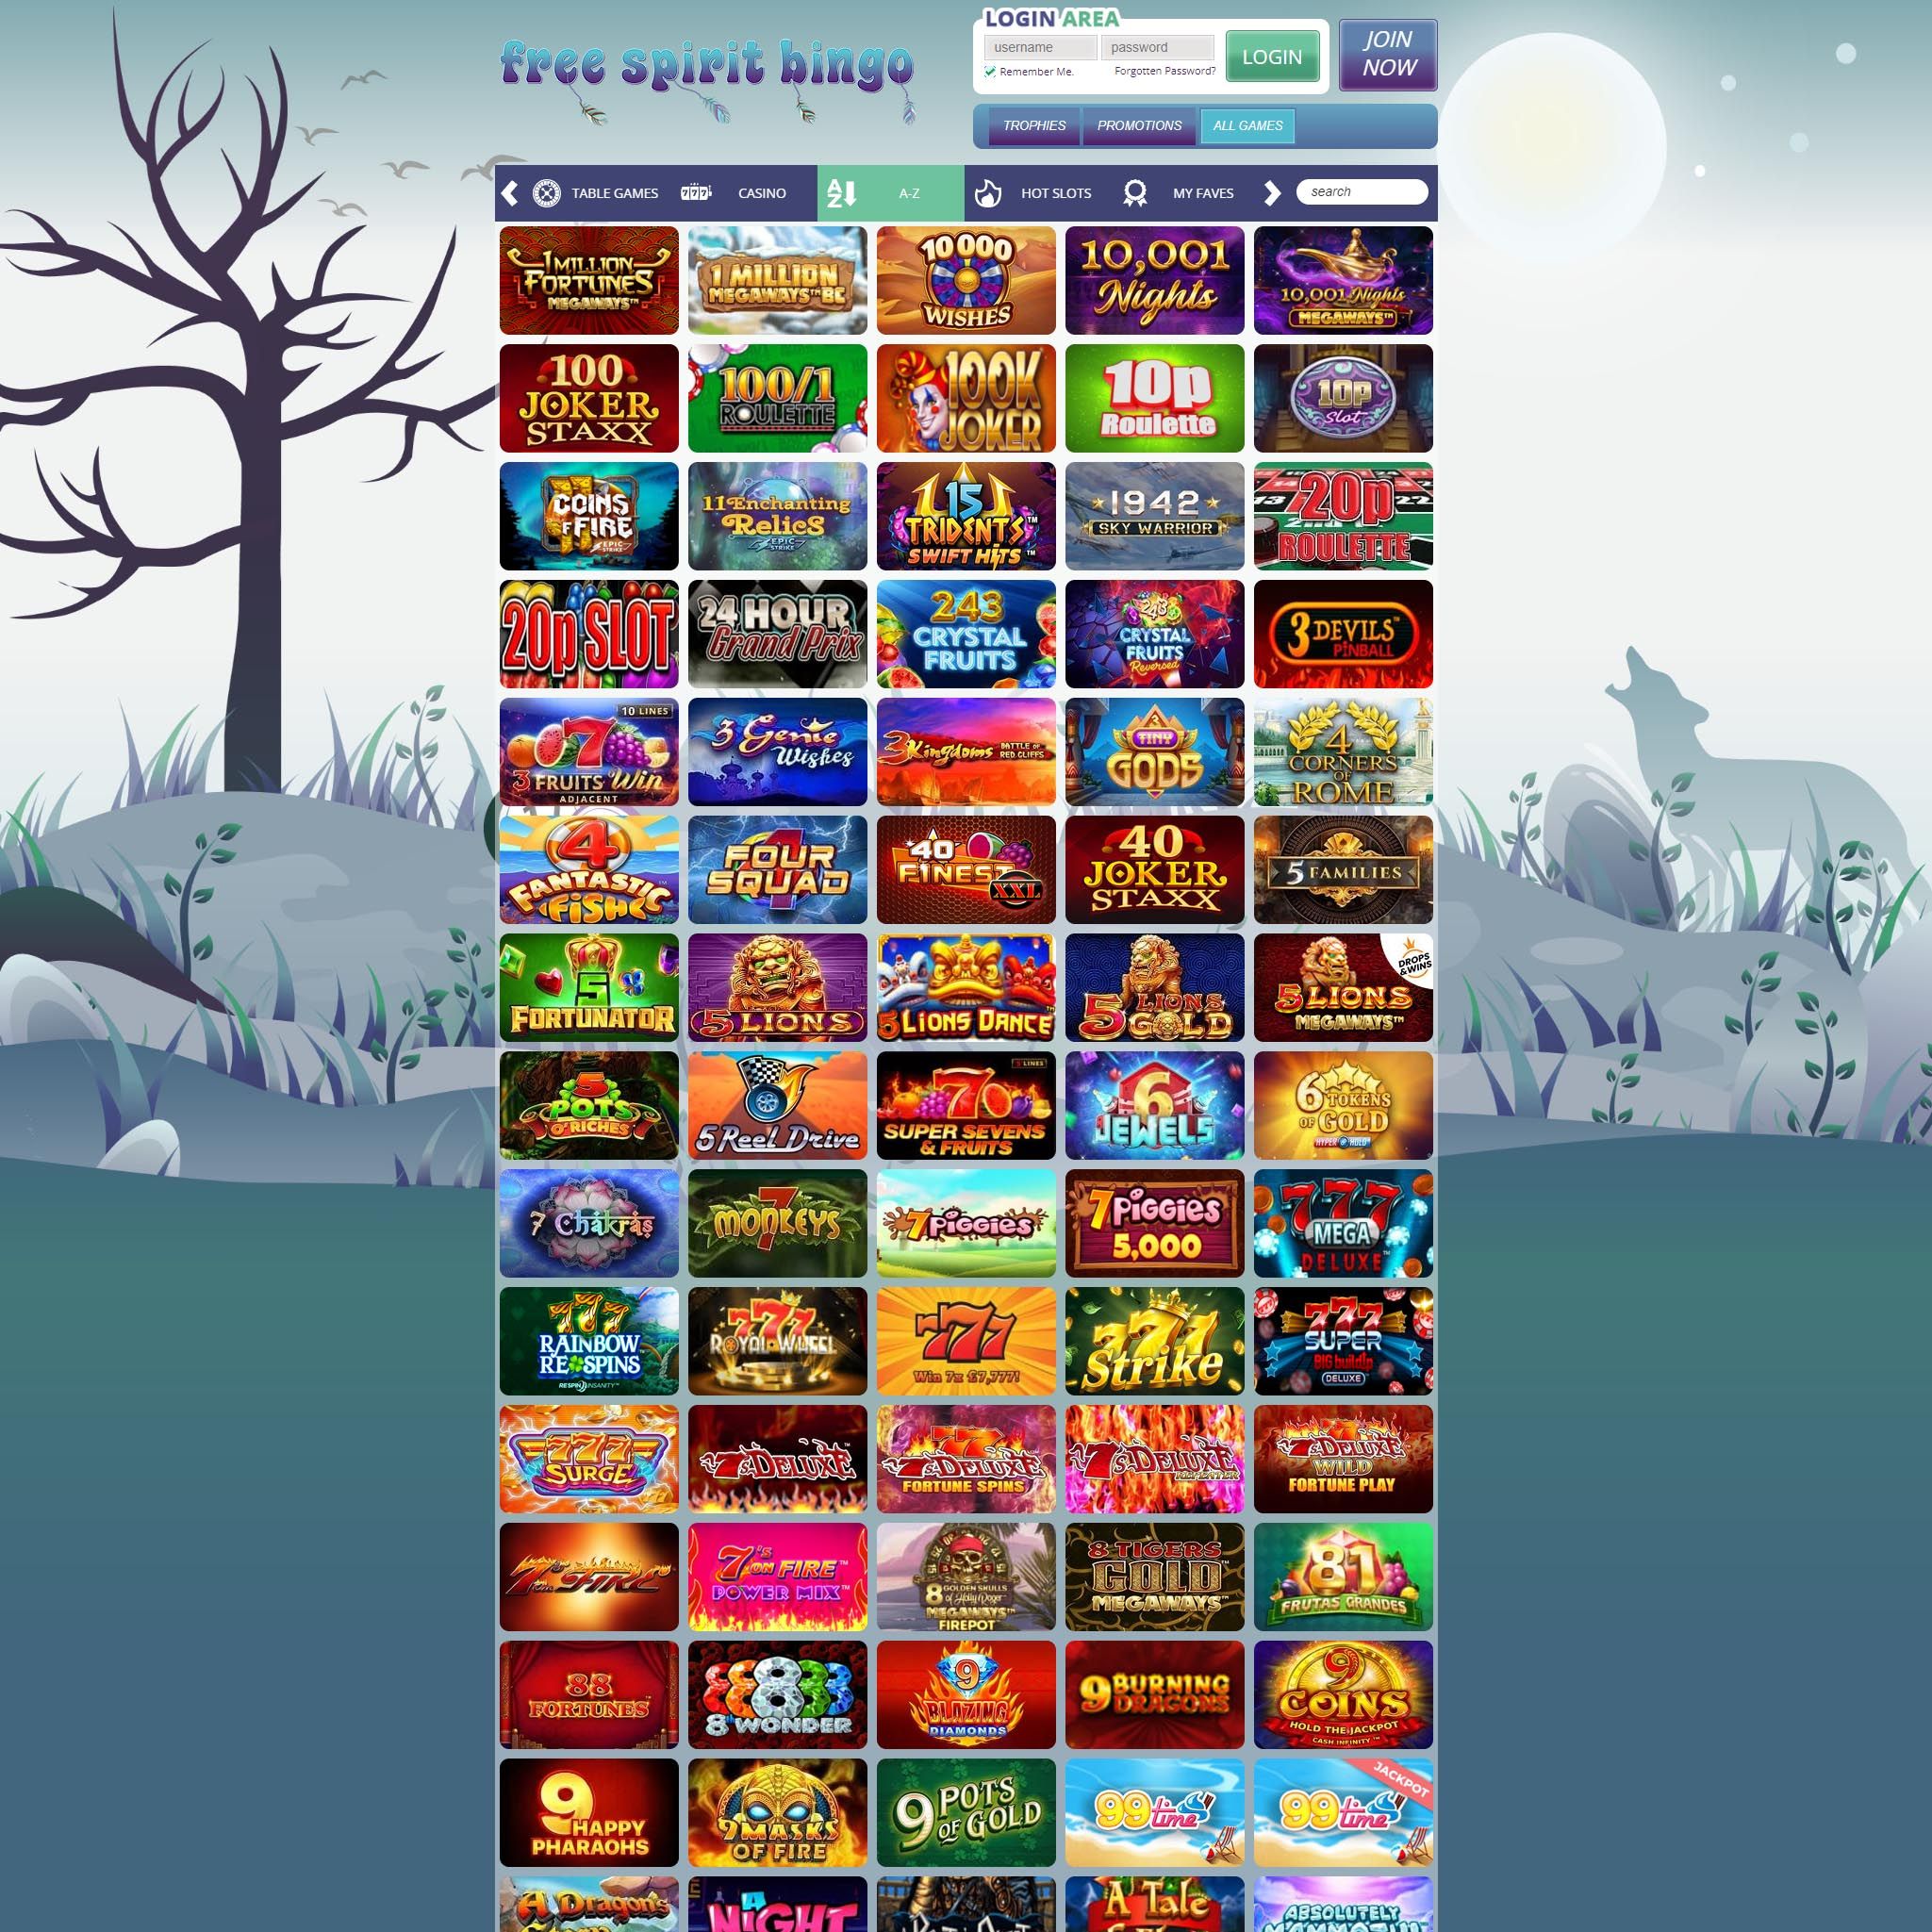 Find Free Spirit Bingo game catalog